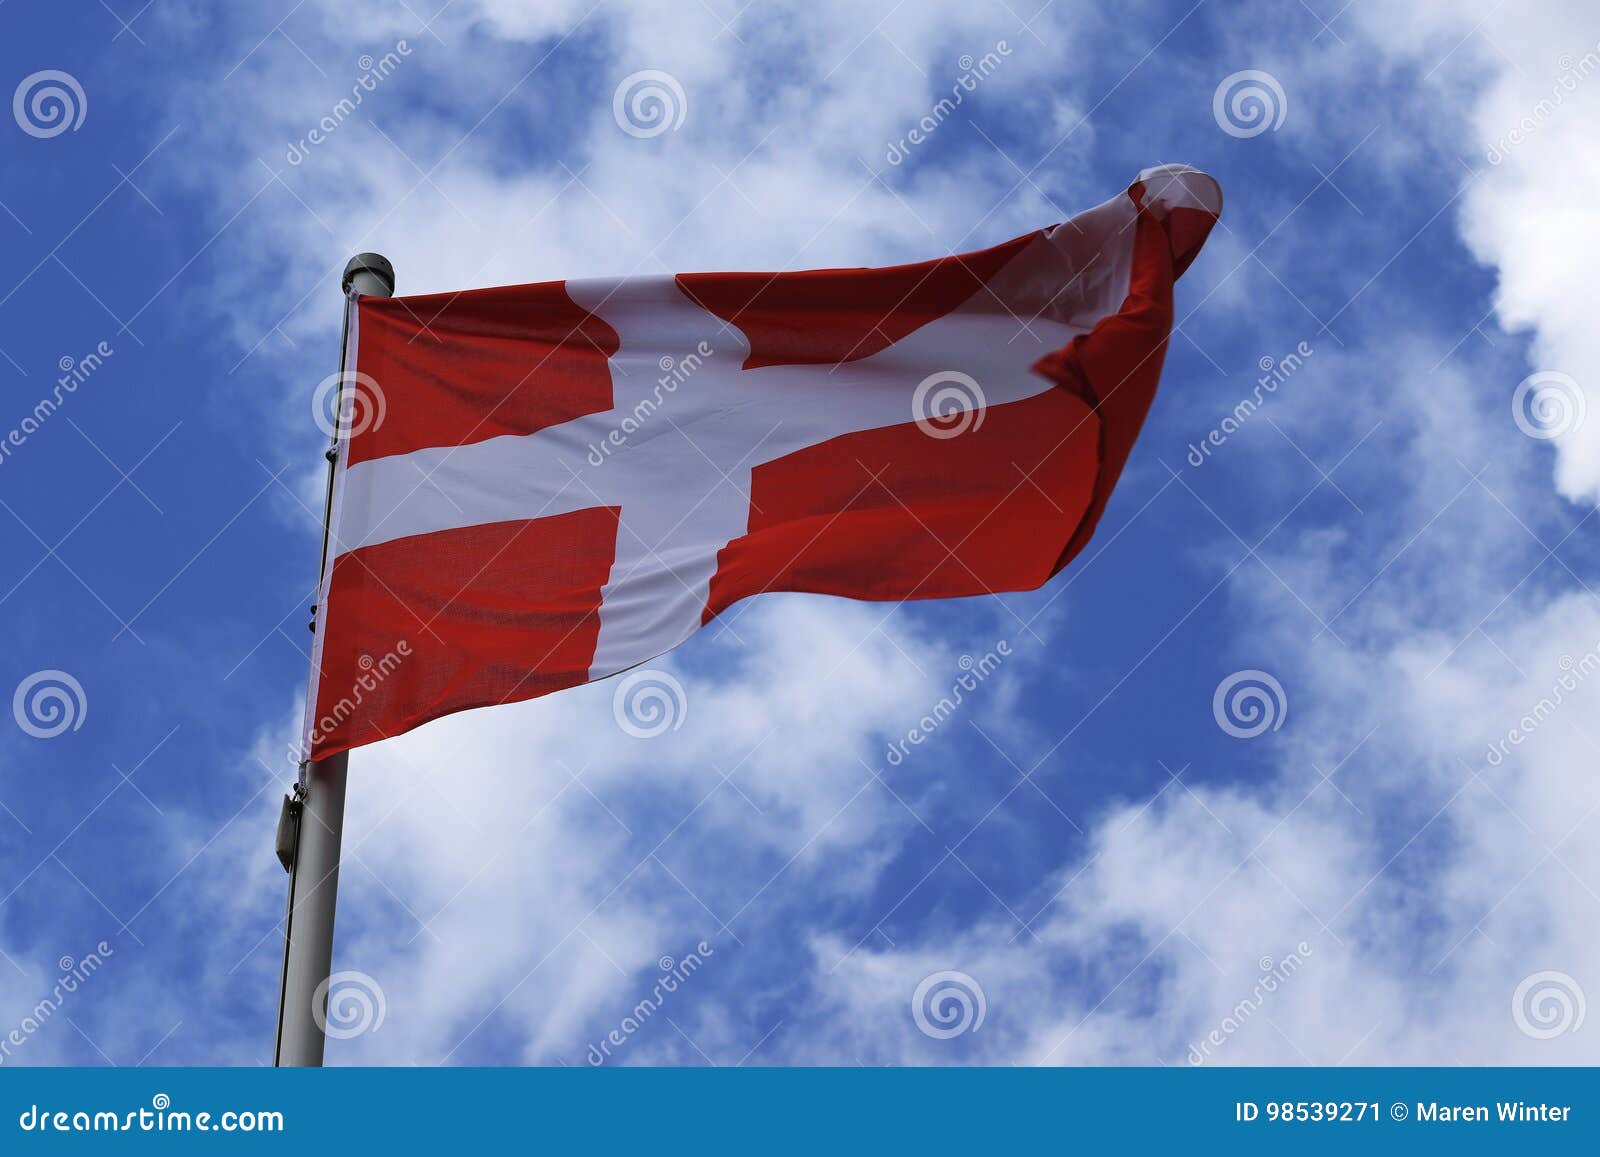 prins Gesprekelijk Investeren Vlag Van Denemarken, Wit Kruis Op Een Rode Achtergrond, Nationaal Symbool  Stock Afbeelding - Image of stof, reis: 98539271